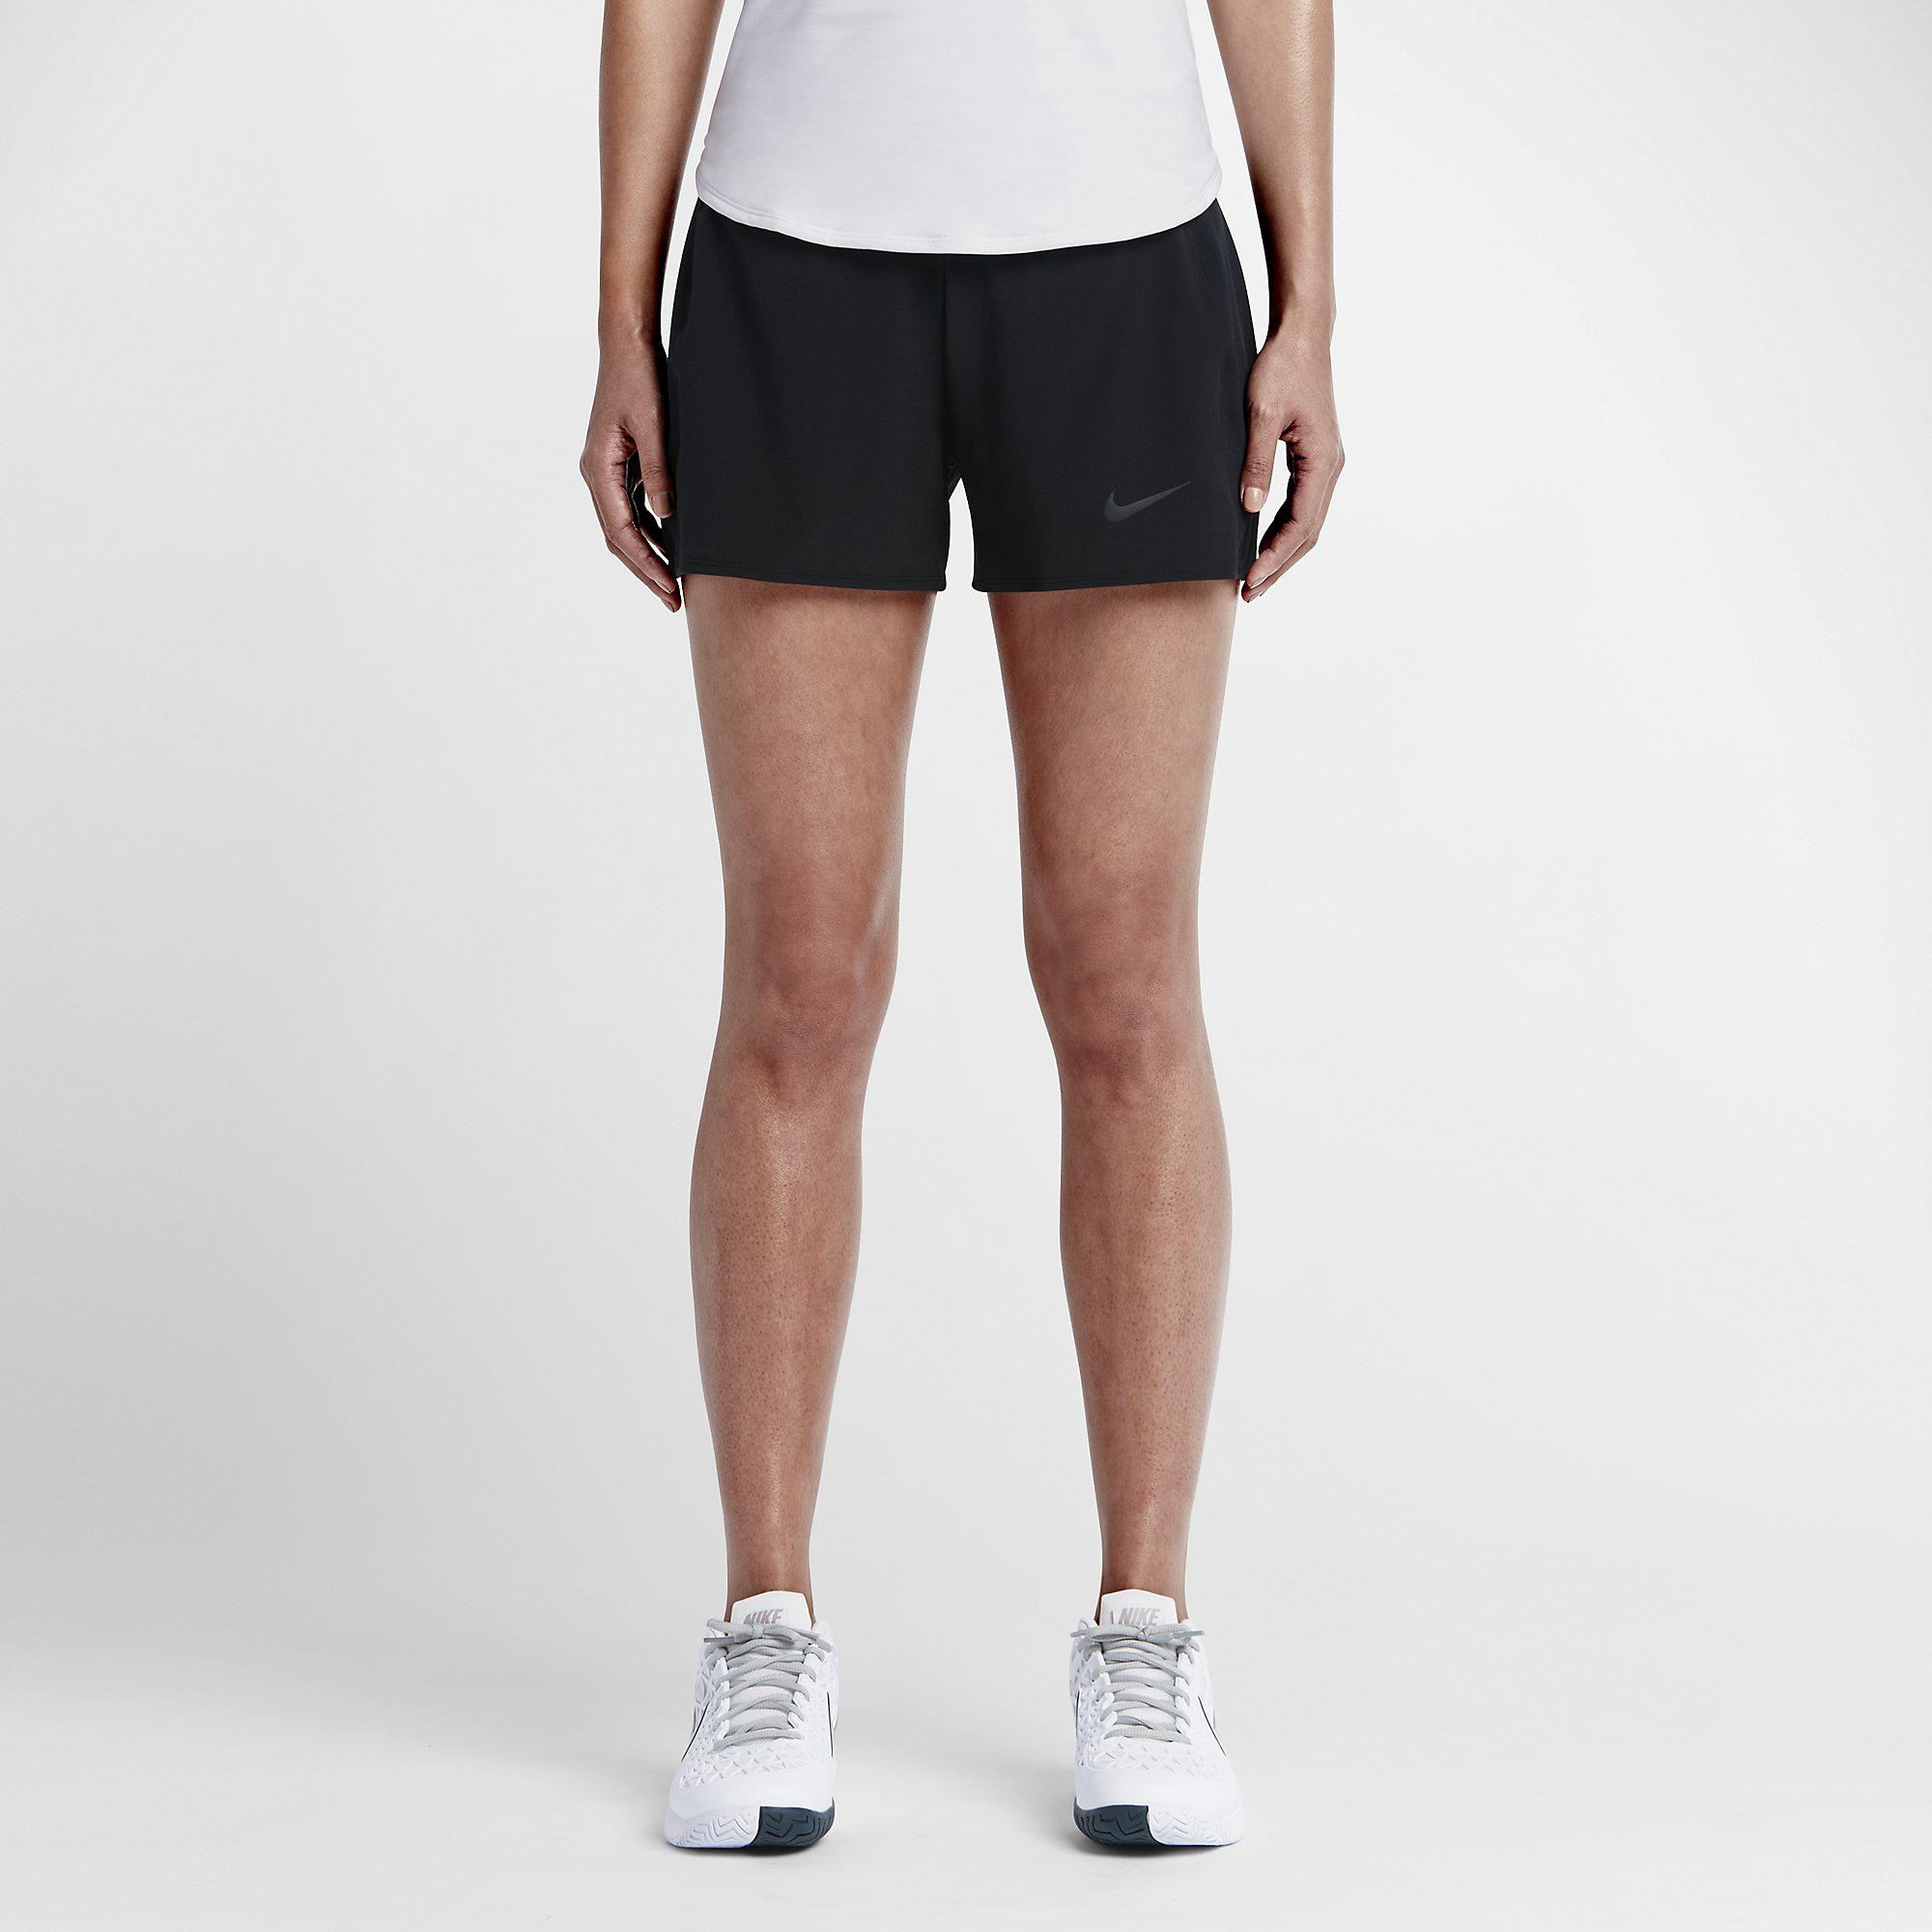 Nike Womens Baseline Tennis Shorts - Black - Tennisnuts.com